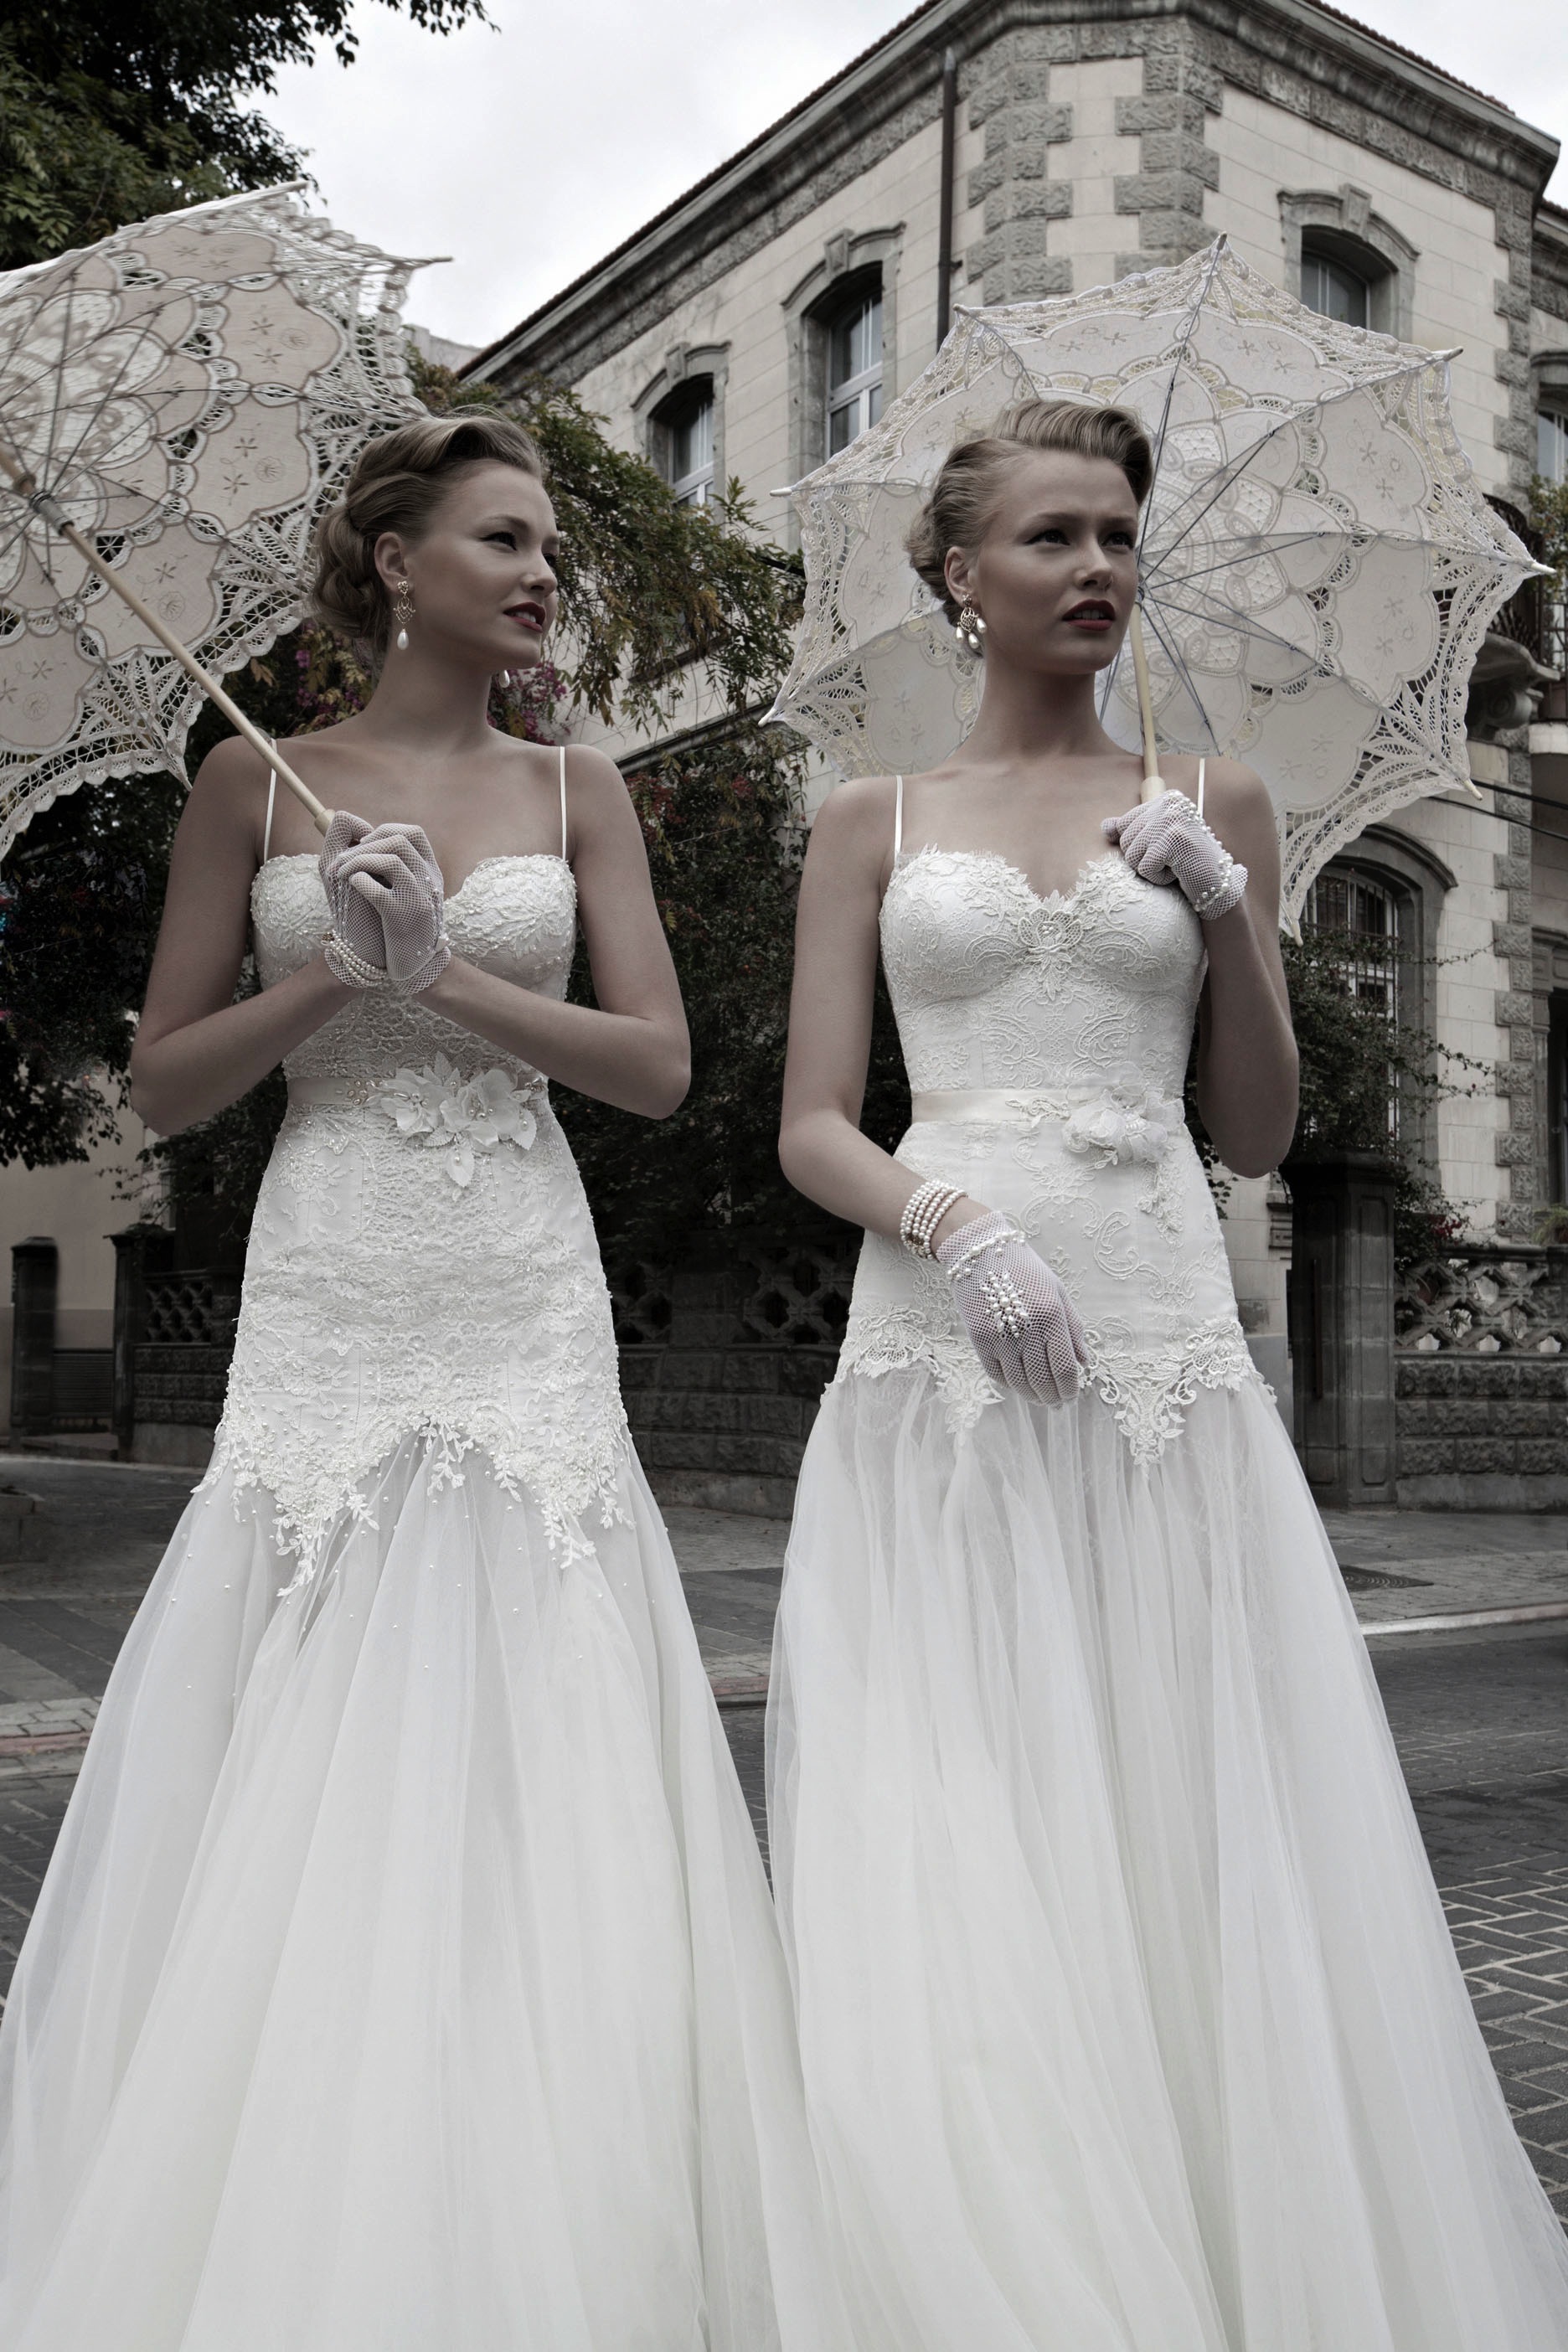 Magic and Lian Wedding Dresses by Galia Lahav